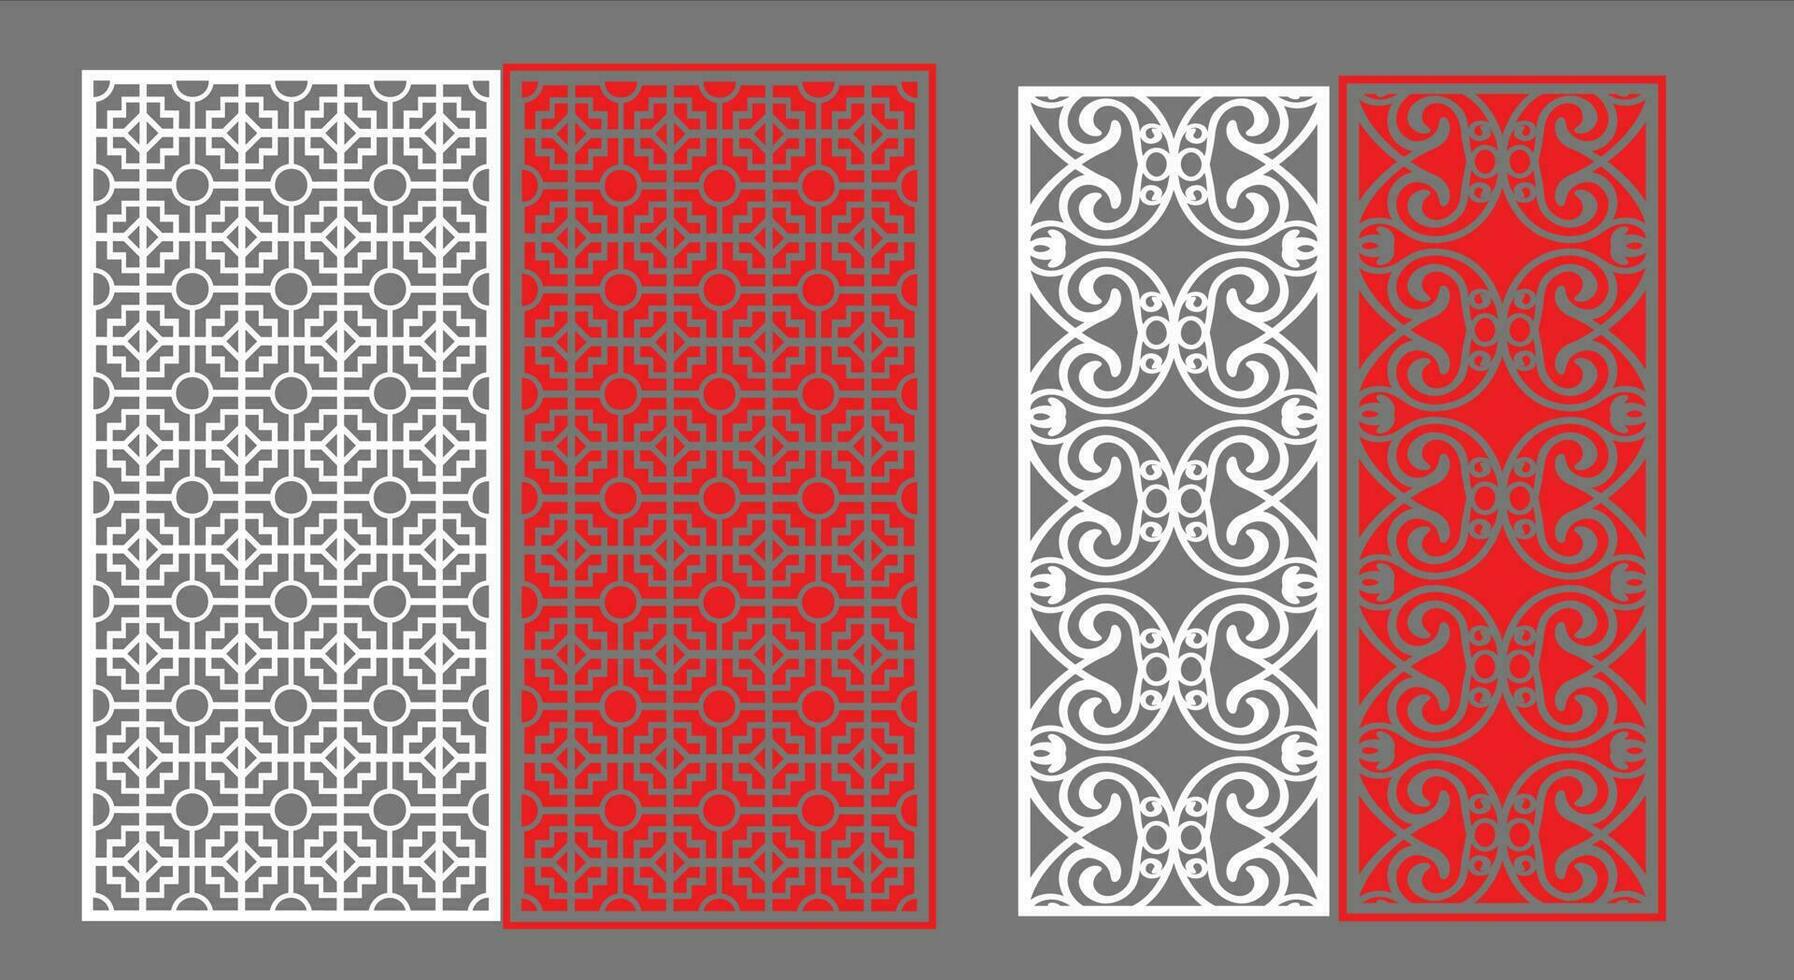 dekorativ Mauer Paneele einstellen jali Design cnc Muster, Laser- Schneiden Muster, Router cnccutting.jali Laser- Schnitt dekorativ Panel einstellen mit Spitze Muster. vektor